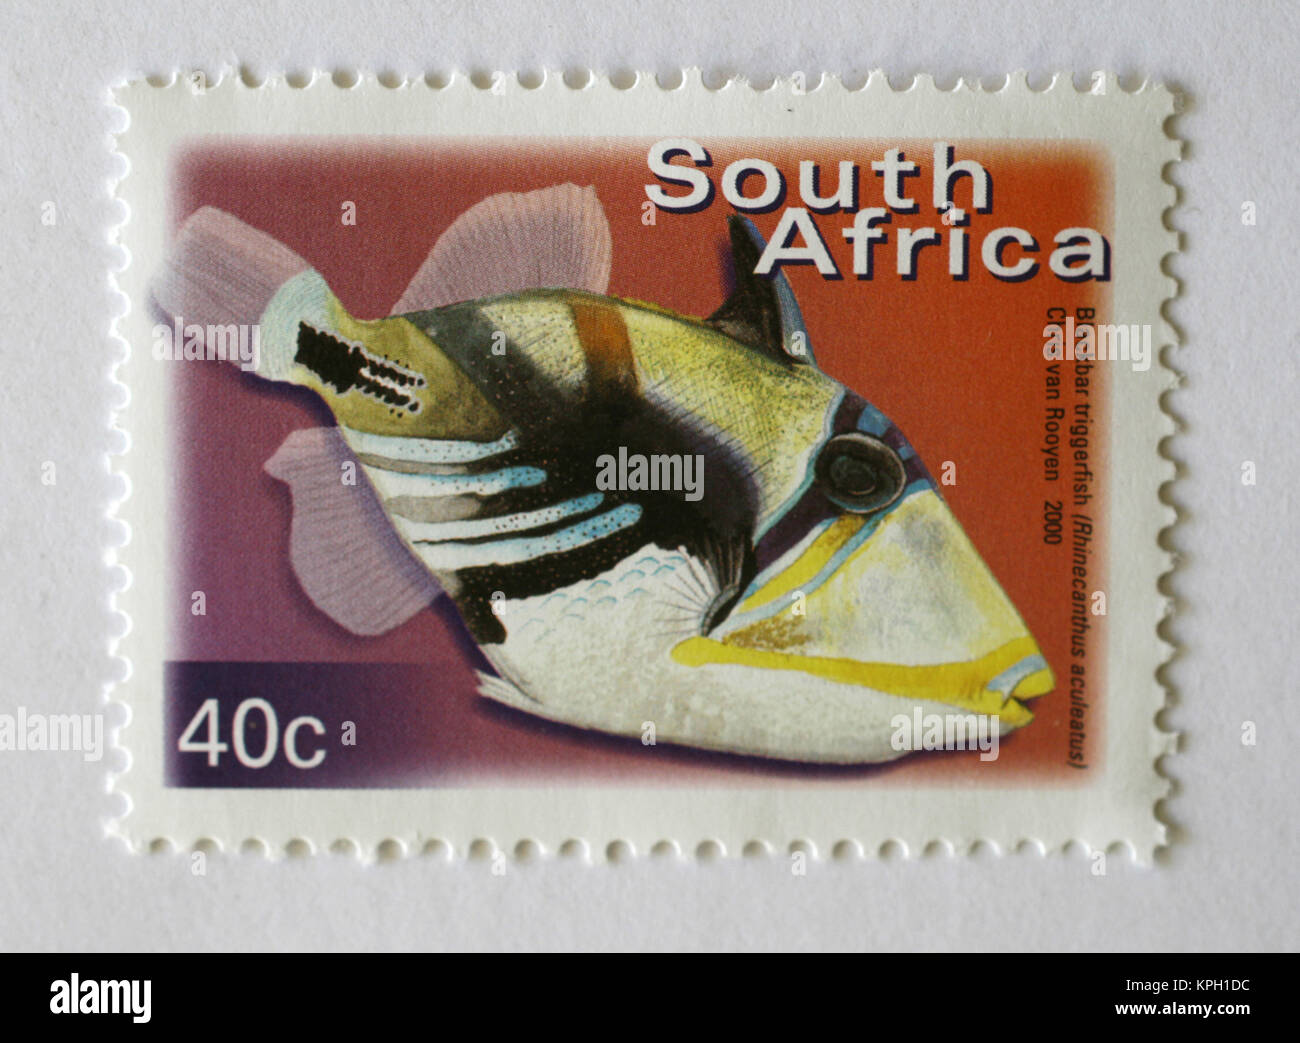 Südafrikanischer Briefmarke, Balken Drückerfisch, 40 Cent wert, Chris van Rooyen; 2000, Südafrika. Stockfoto